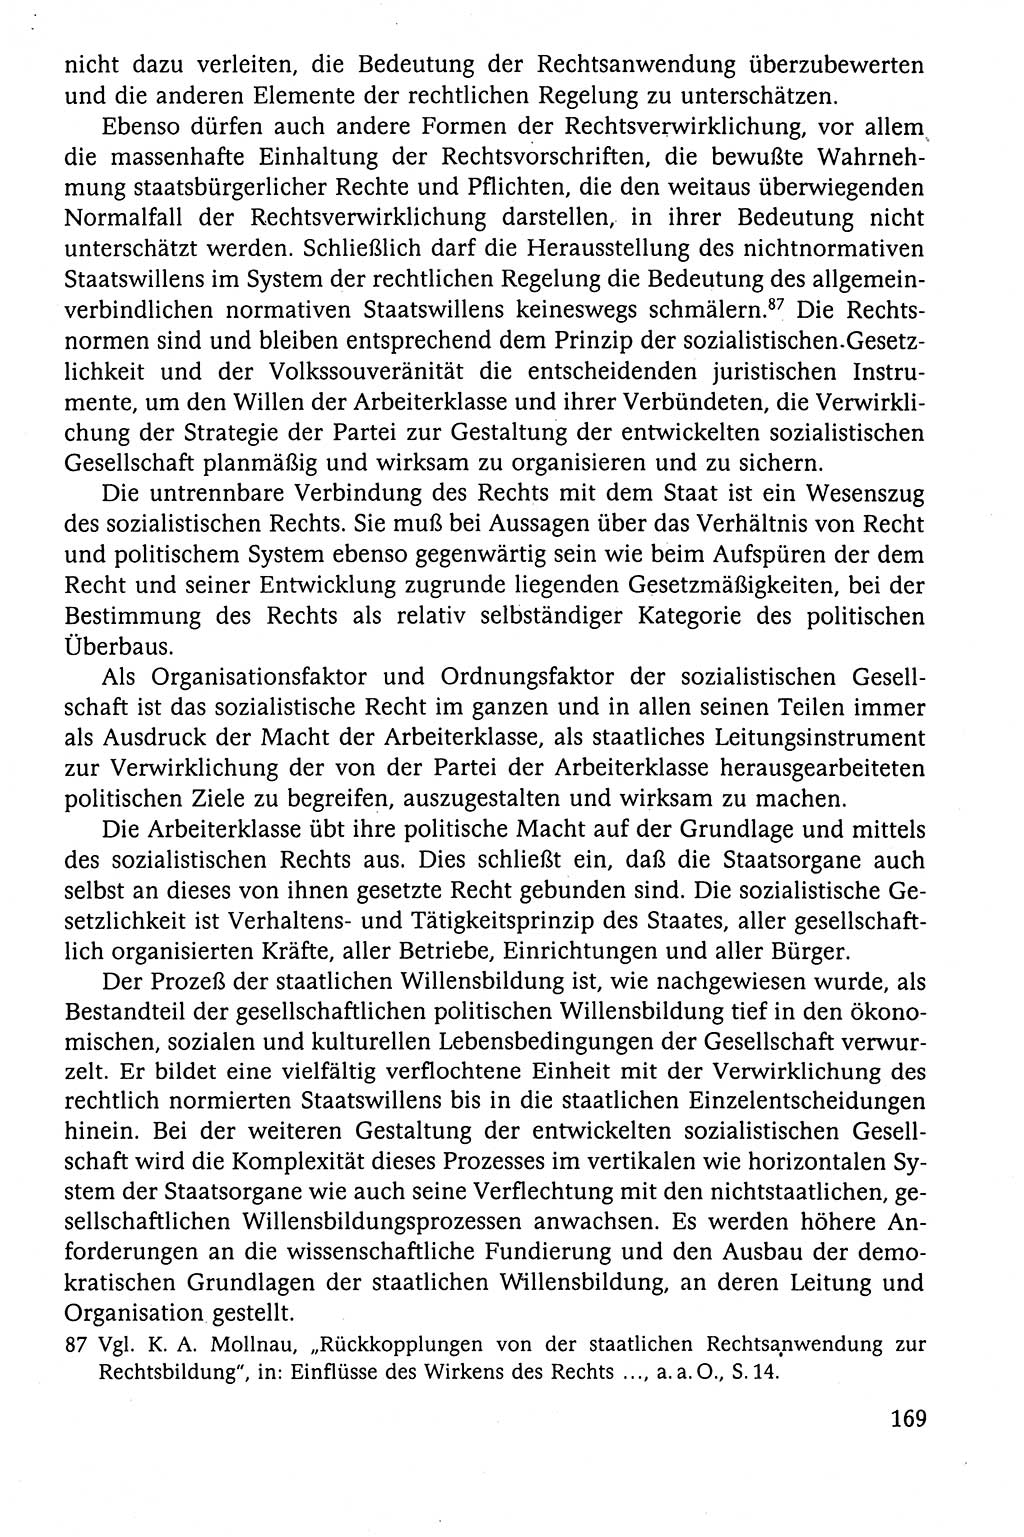 Der Staat im politischen System der DDR (Deutsche Demokratische Republik) 1986, Seite 169 (St. pol. Sys. DDR 1986, S. 169)